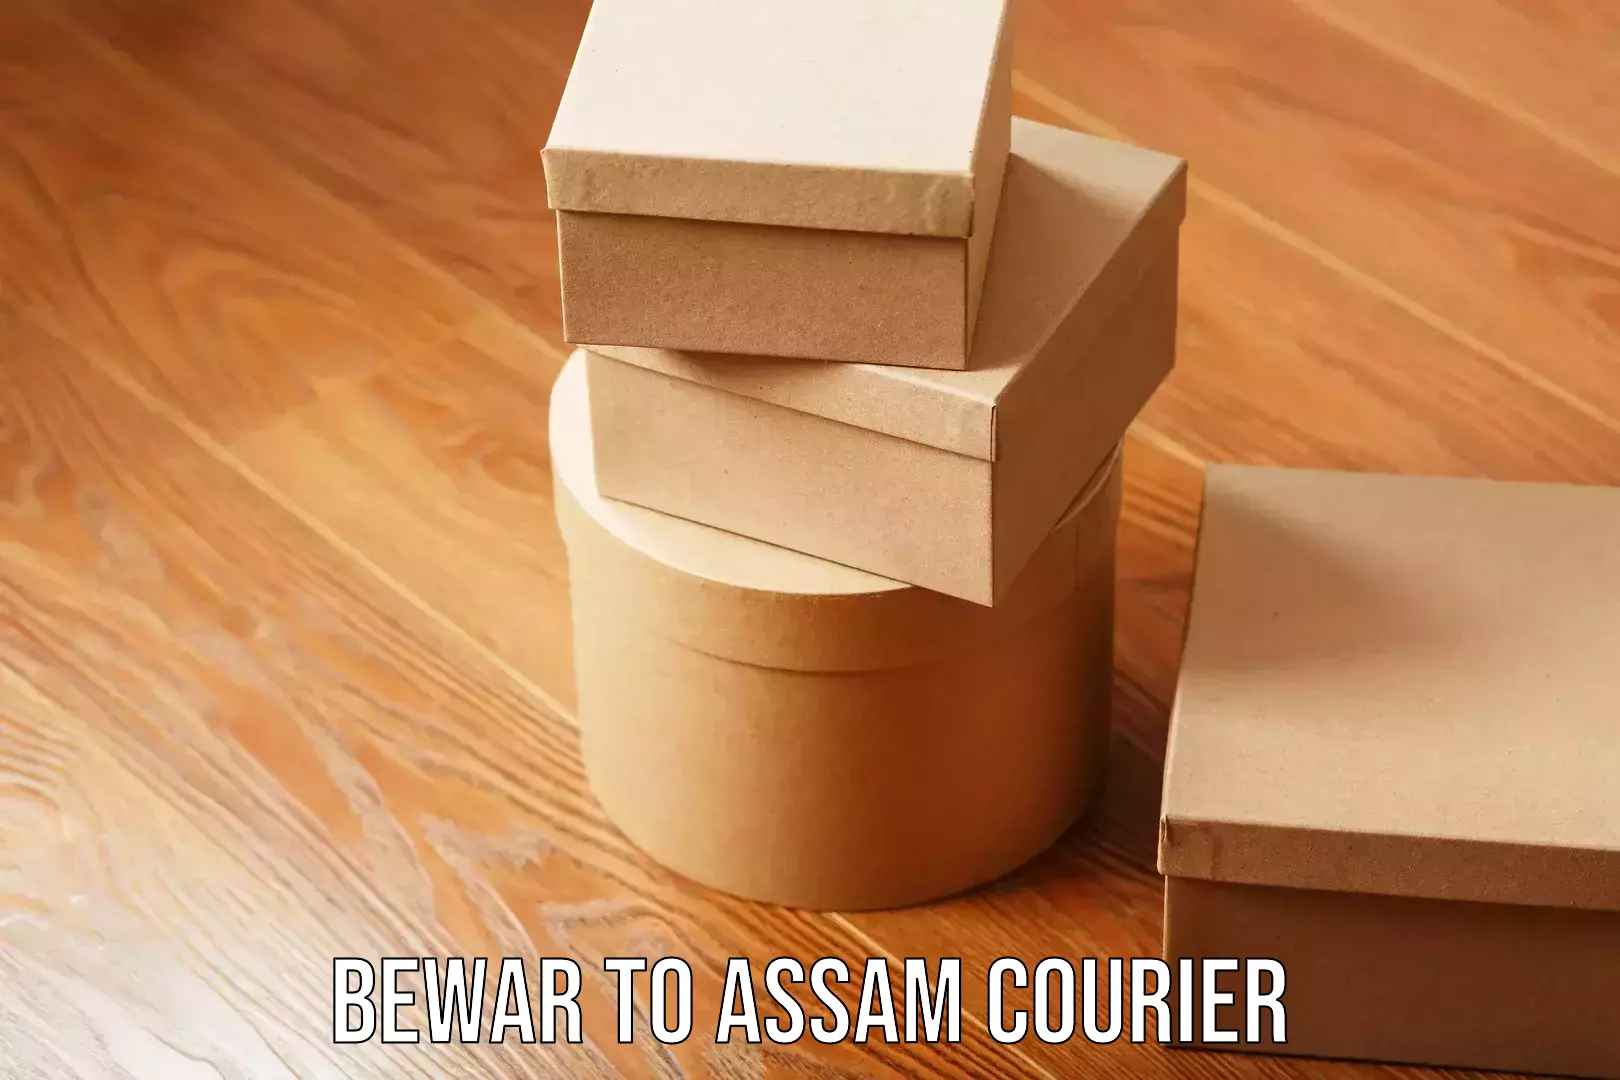 Courier service partnerships Bewar to Assam